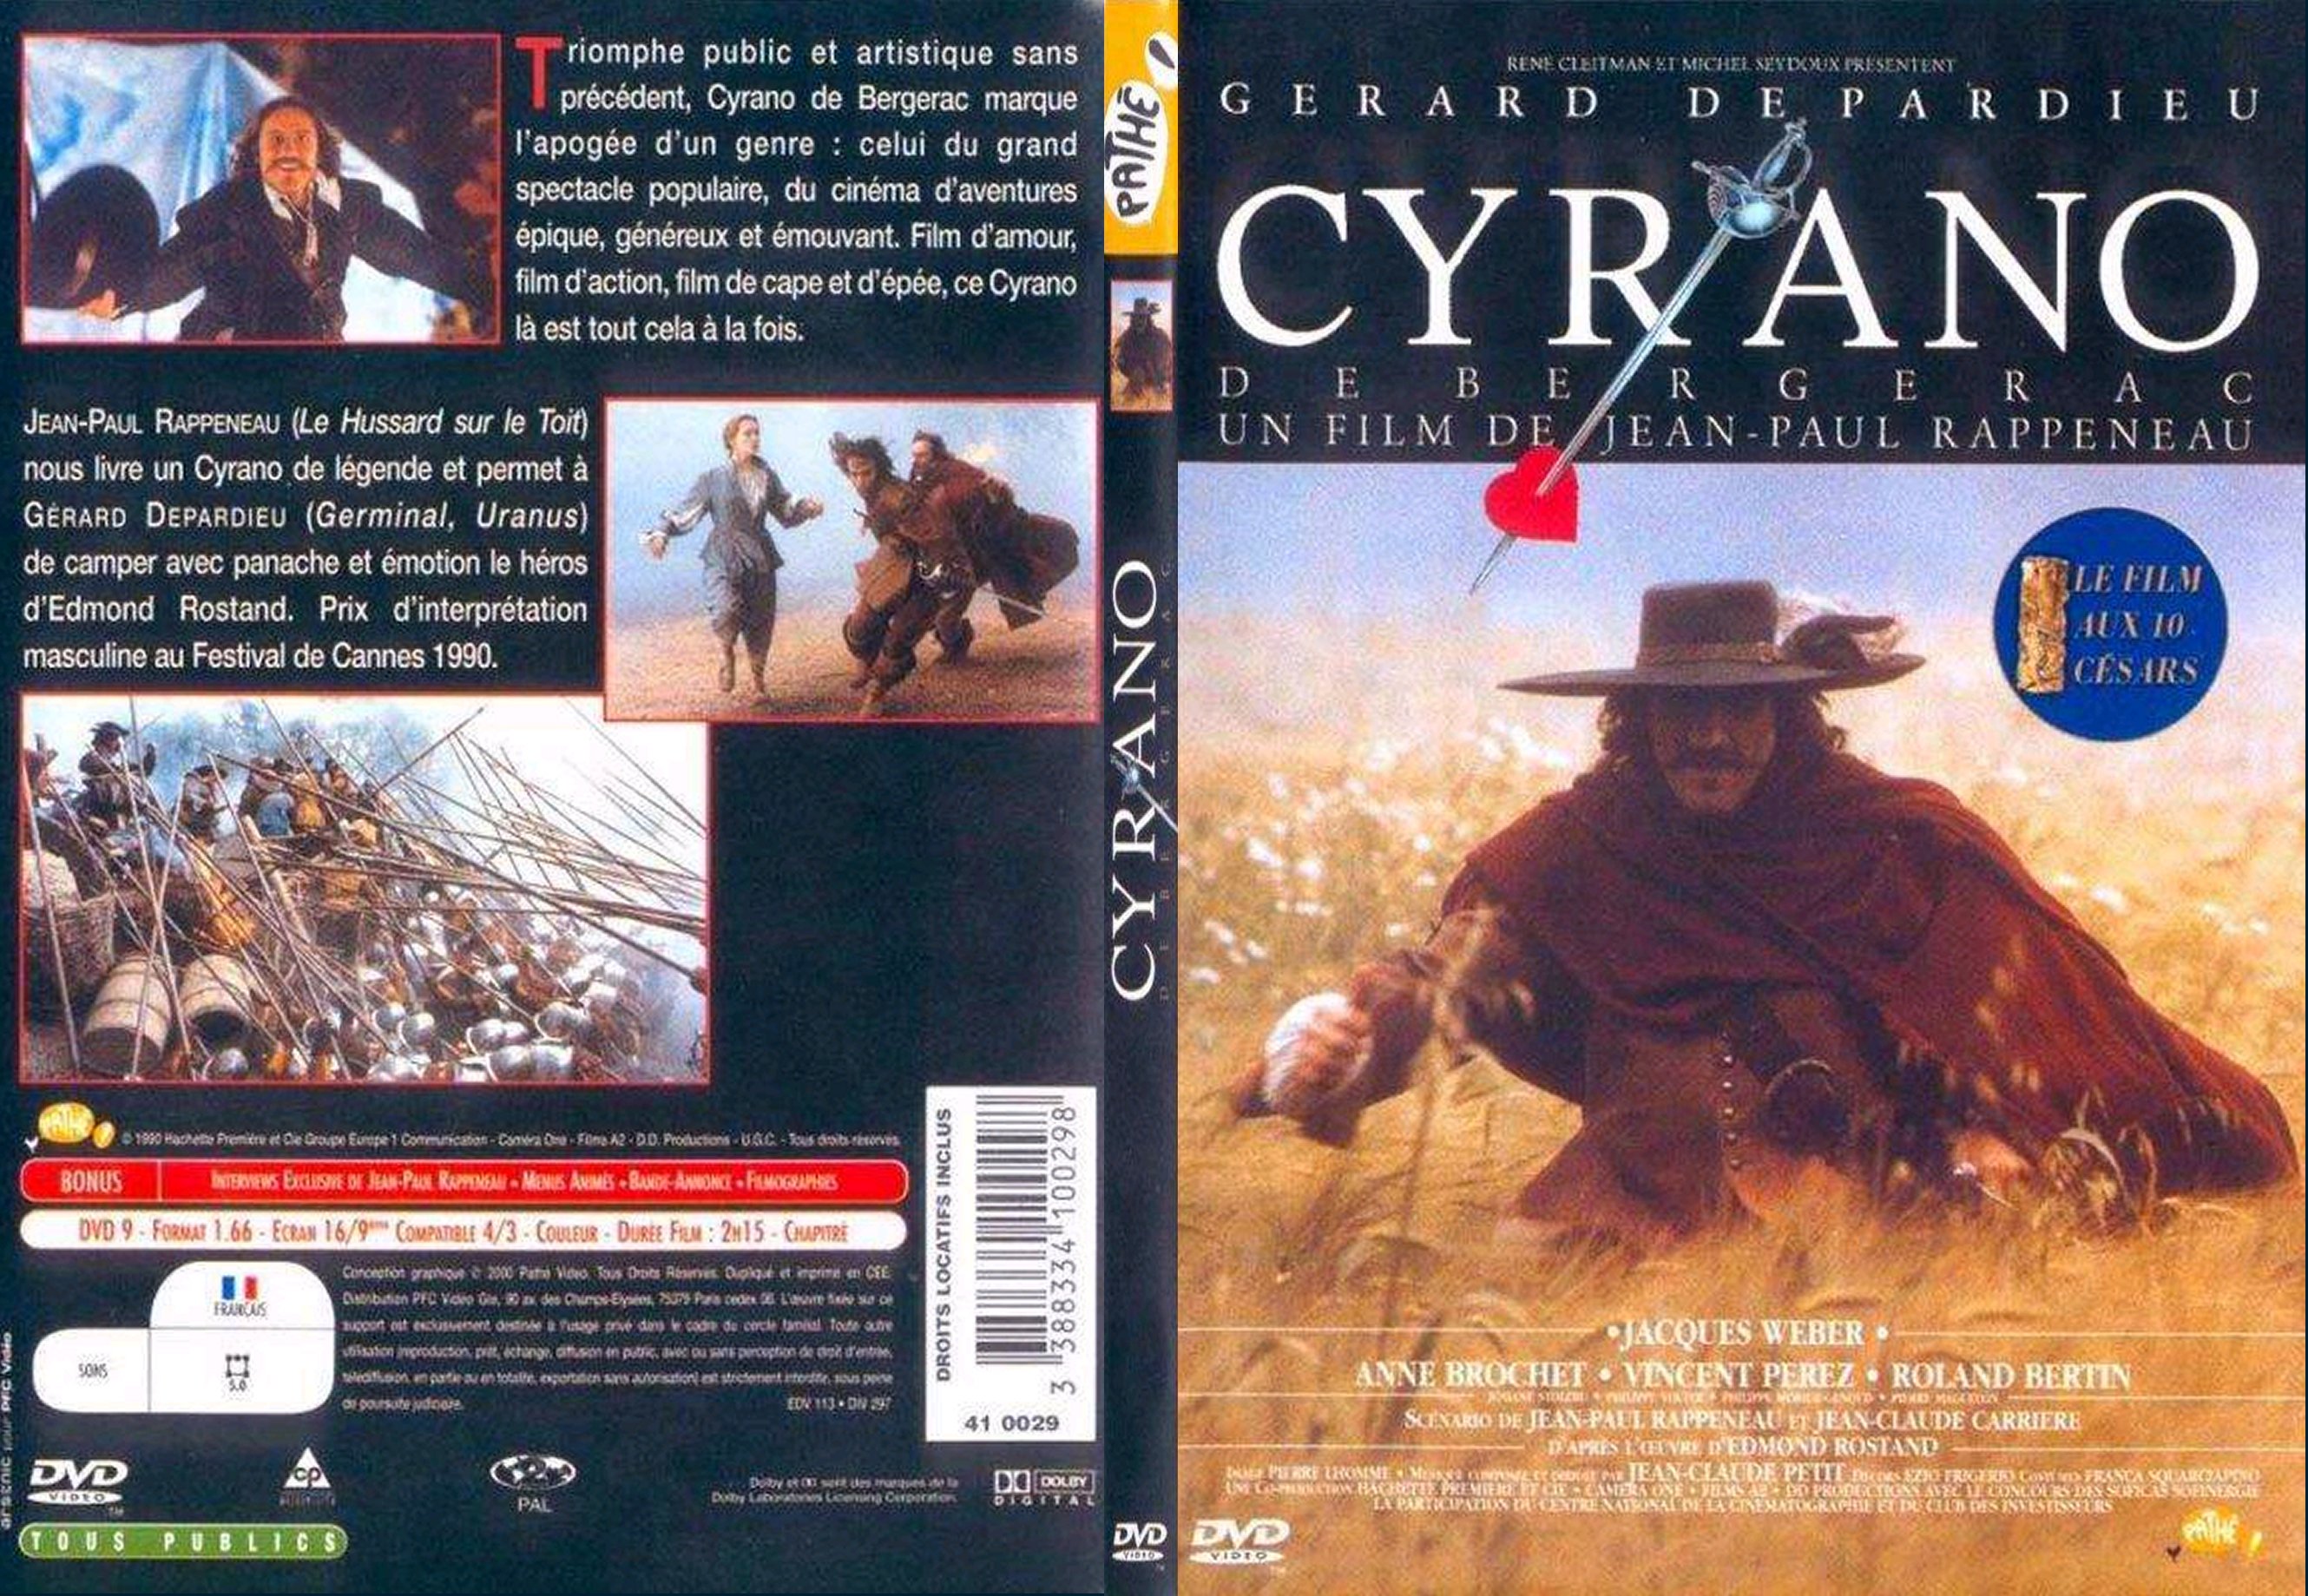 Jaquette DVD Cyrano de Bergerac - SLIM